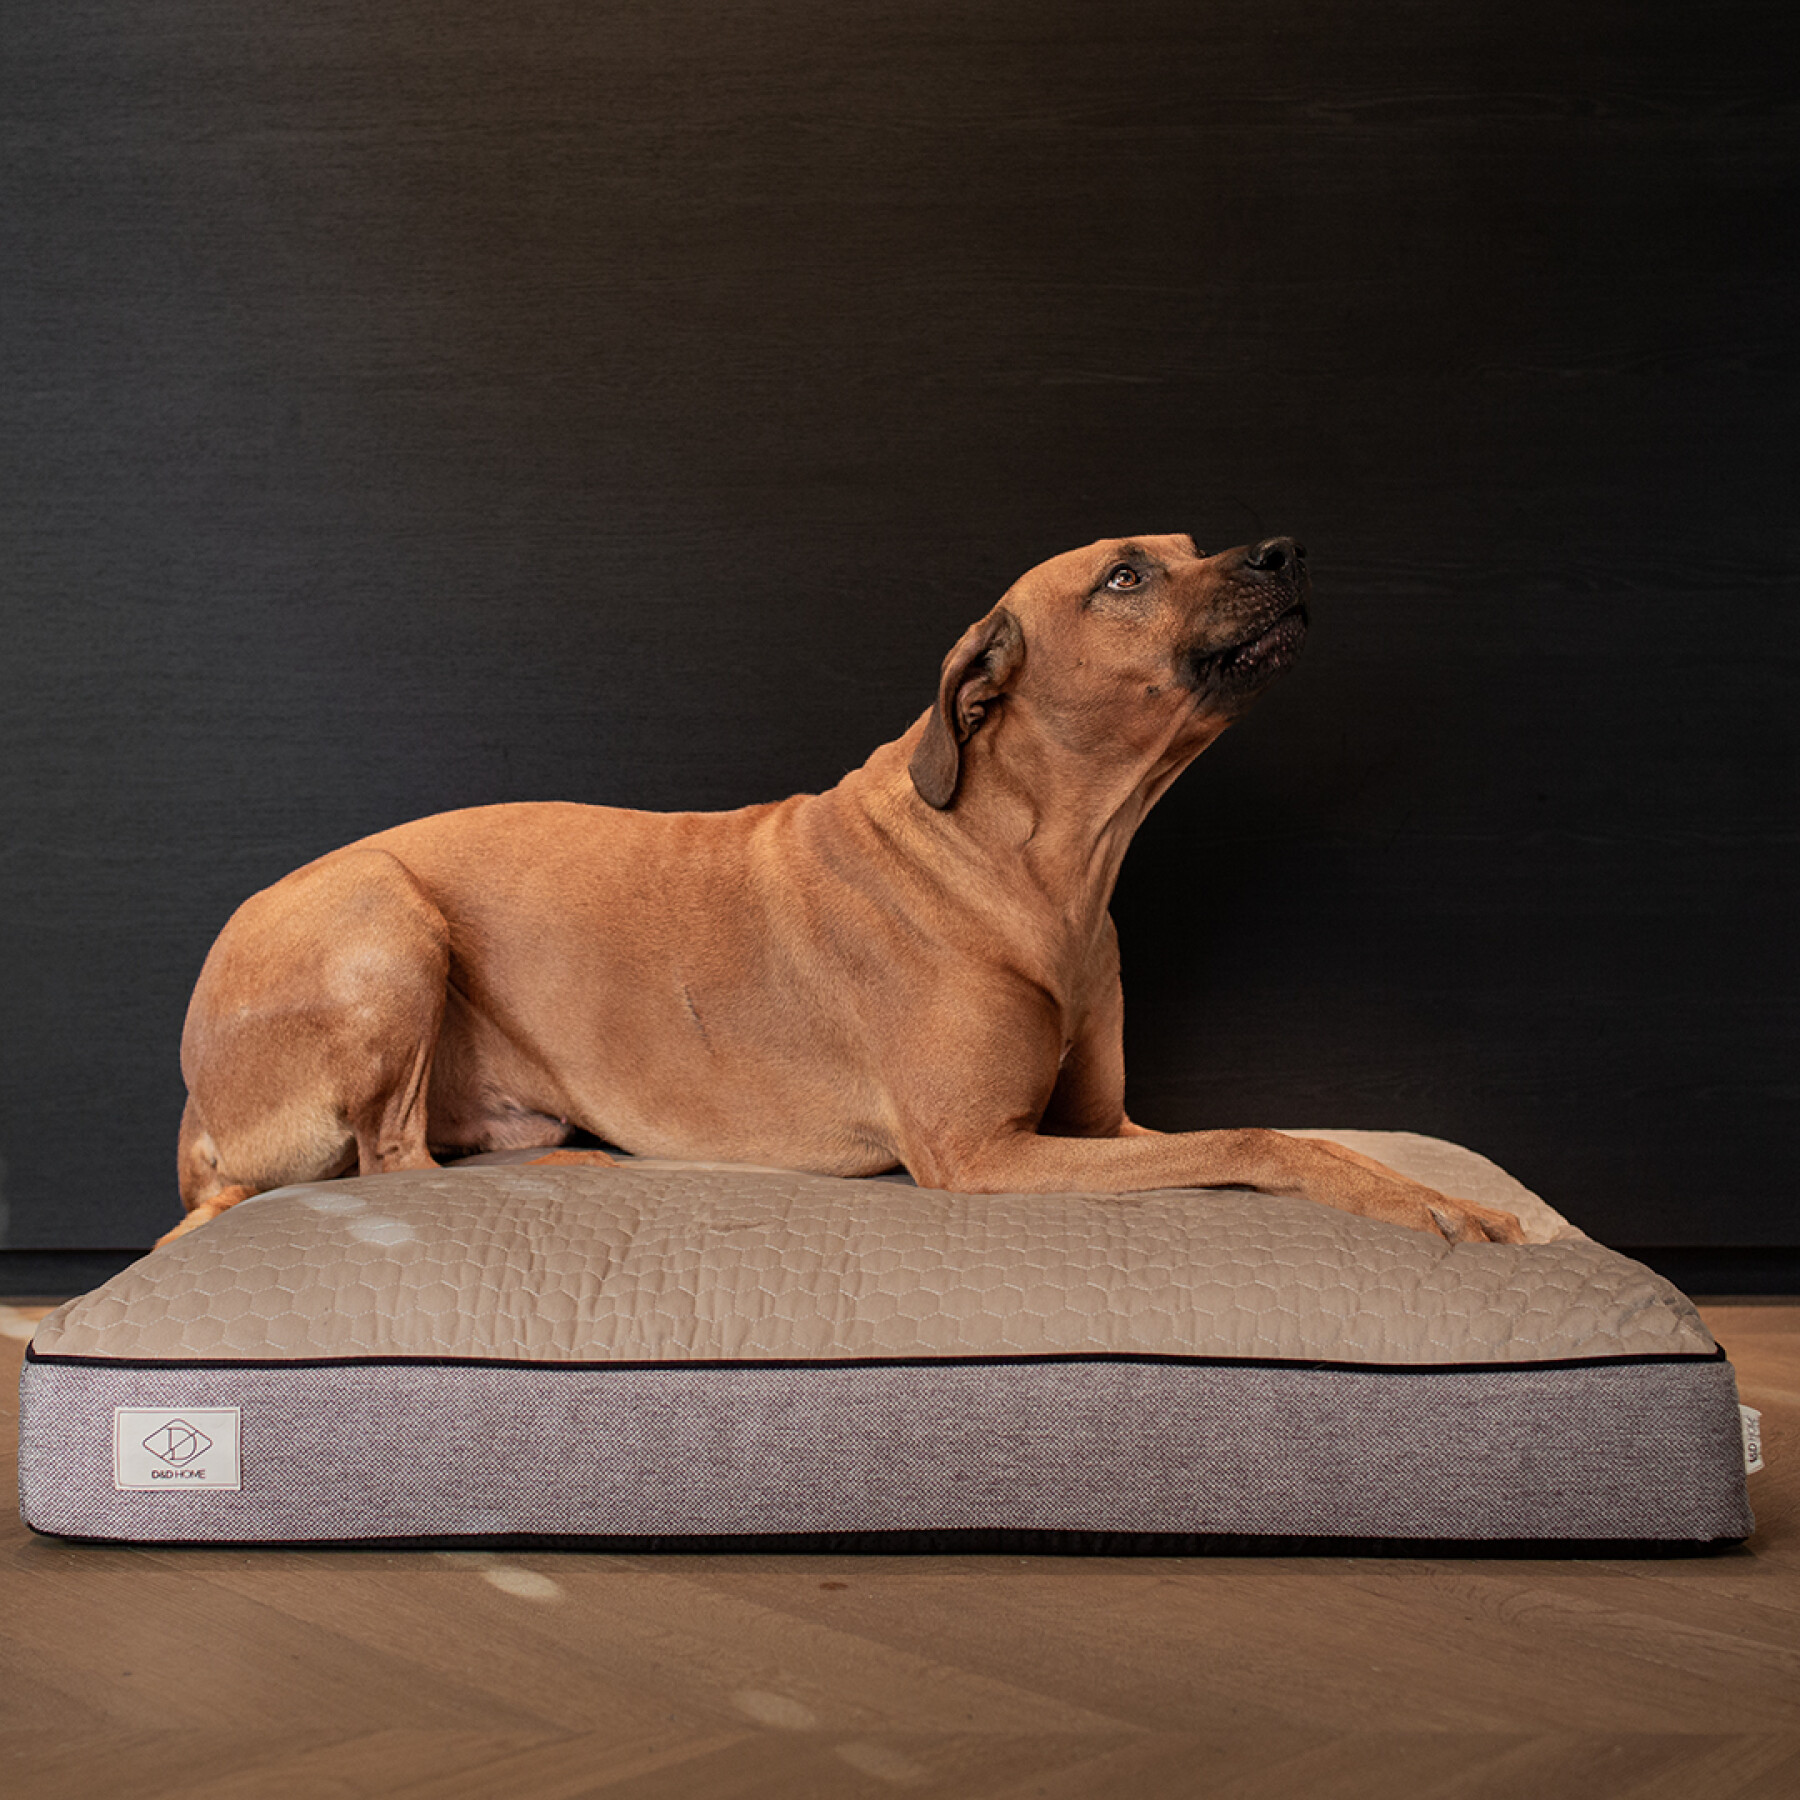 Dog mattress D&D Home Celia